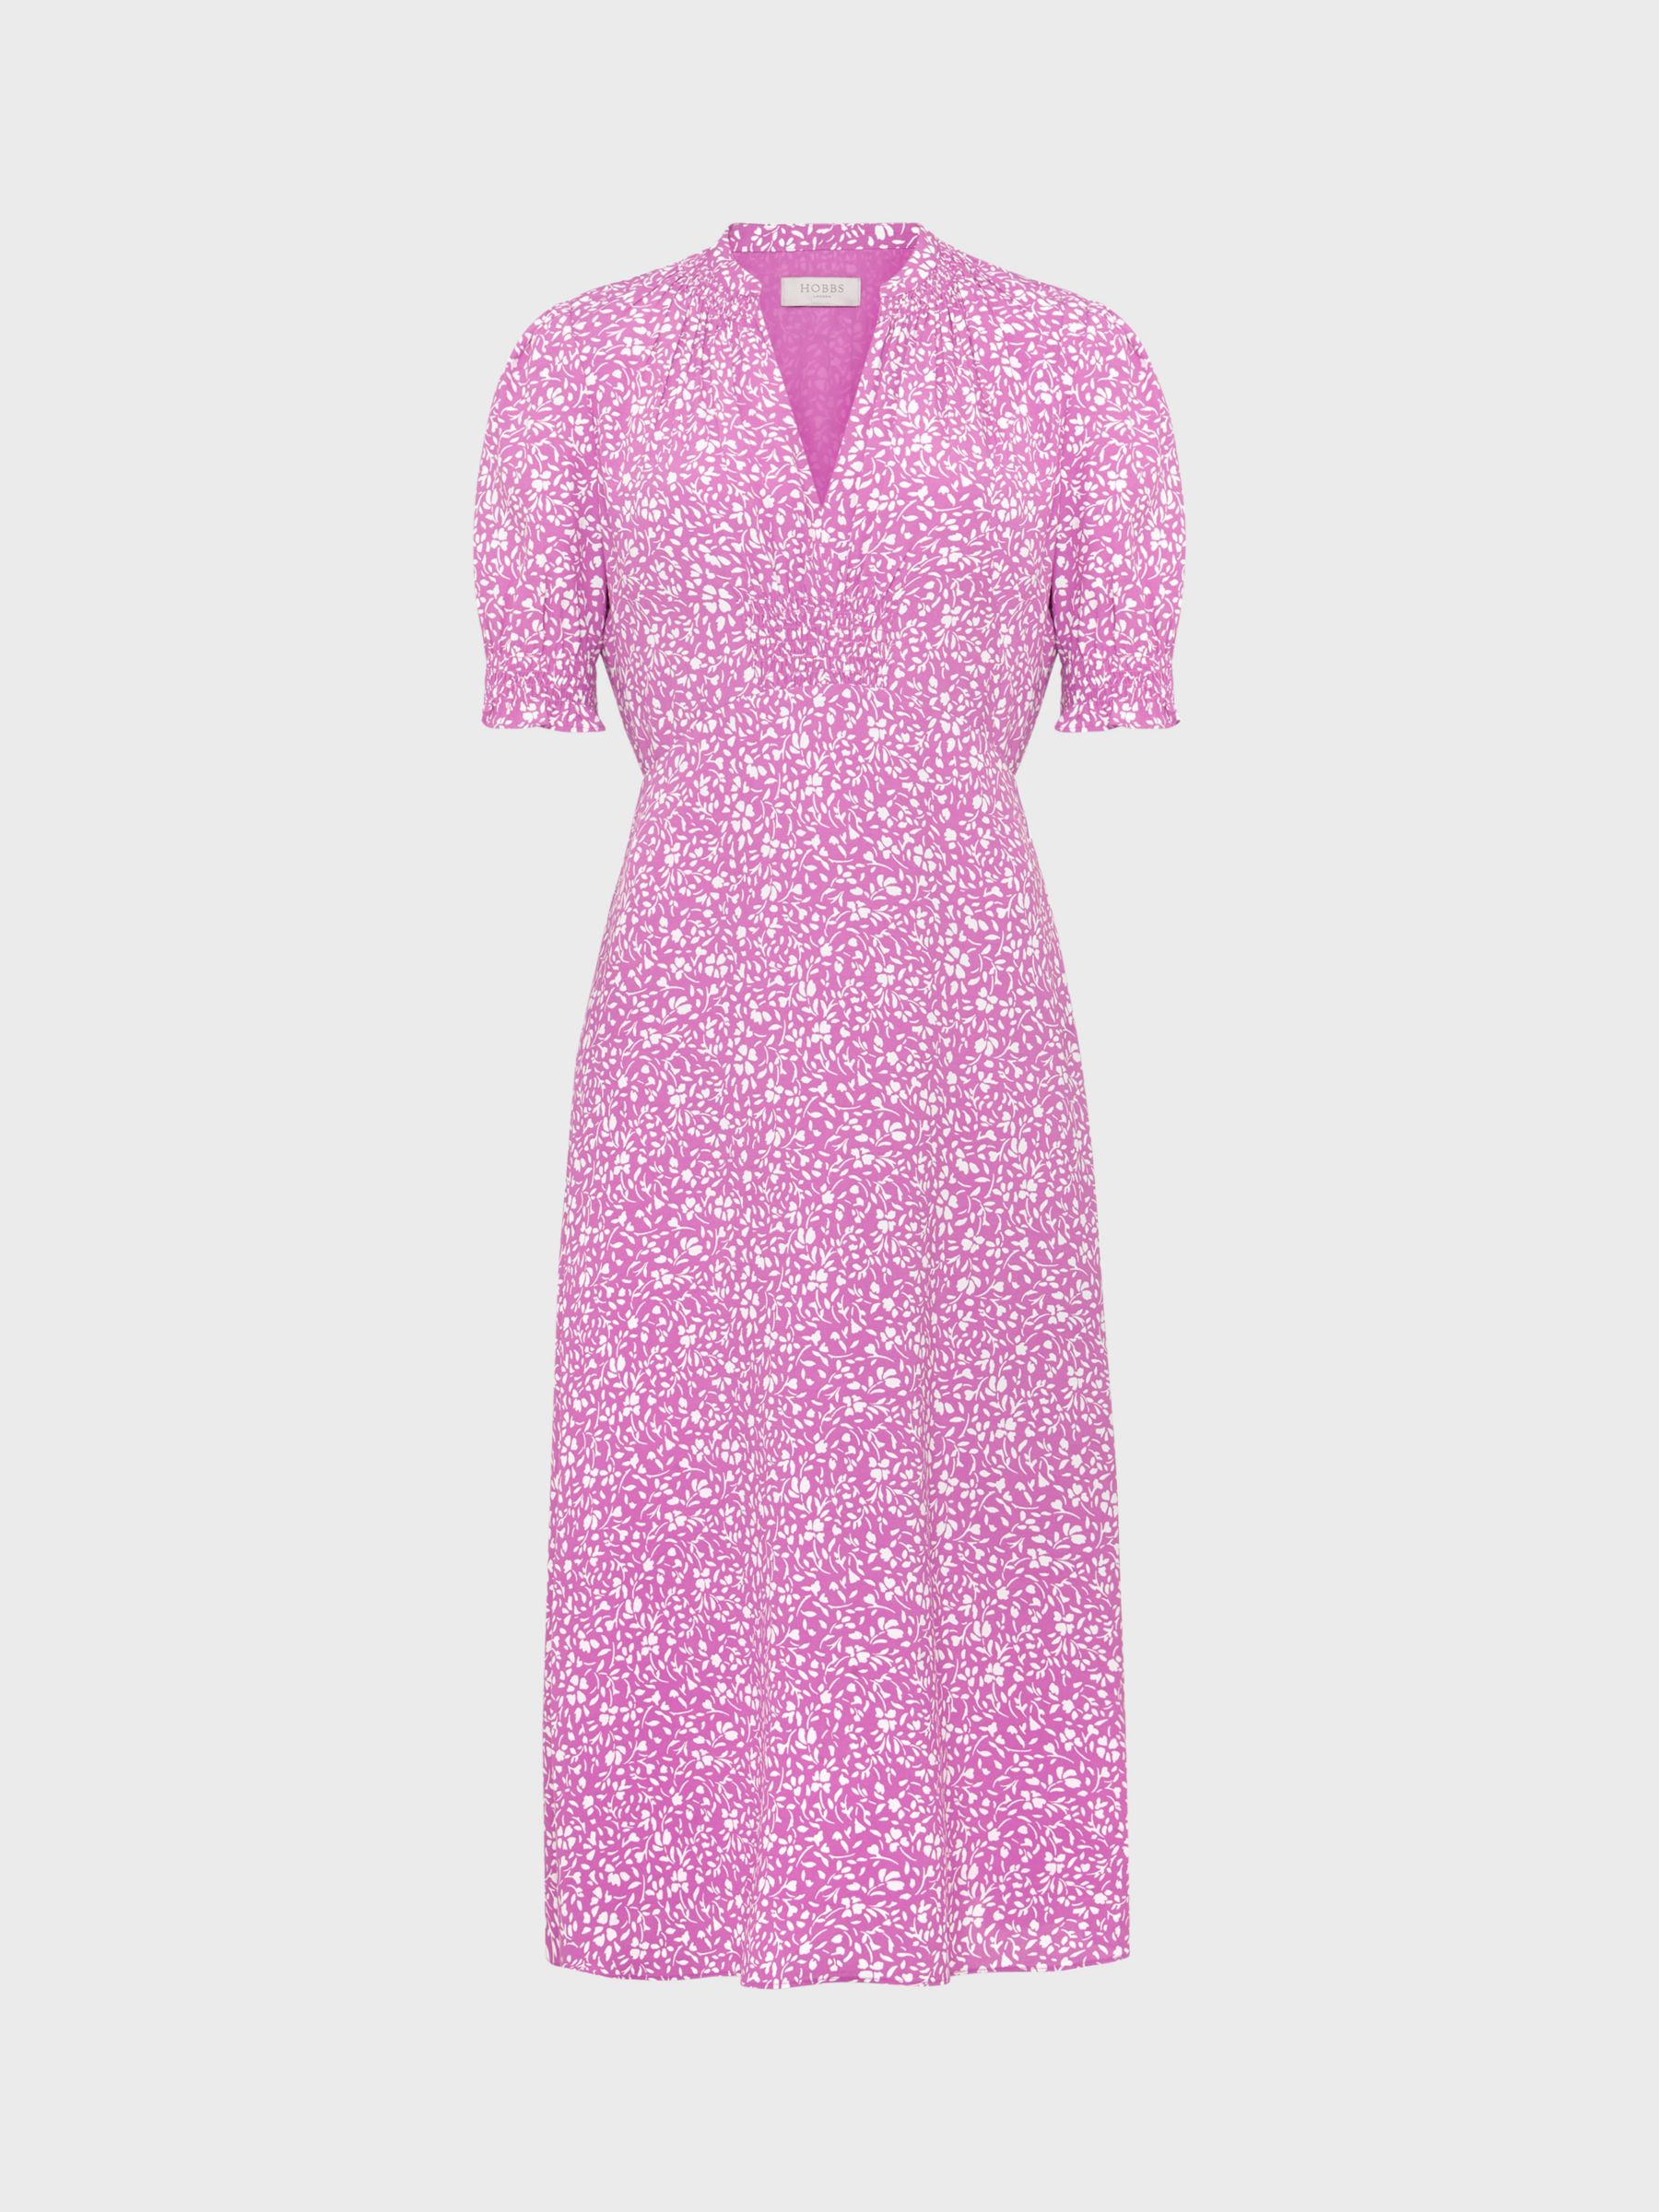 Hobbs Tullia Floral Midi Dress, Pink/Ivory, 8